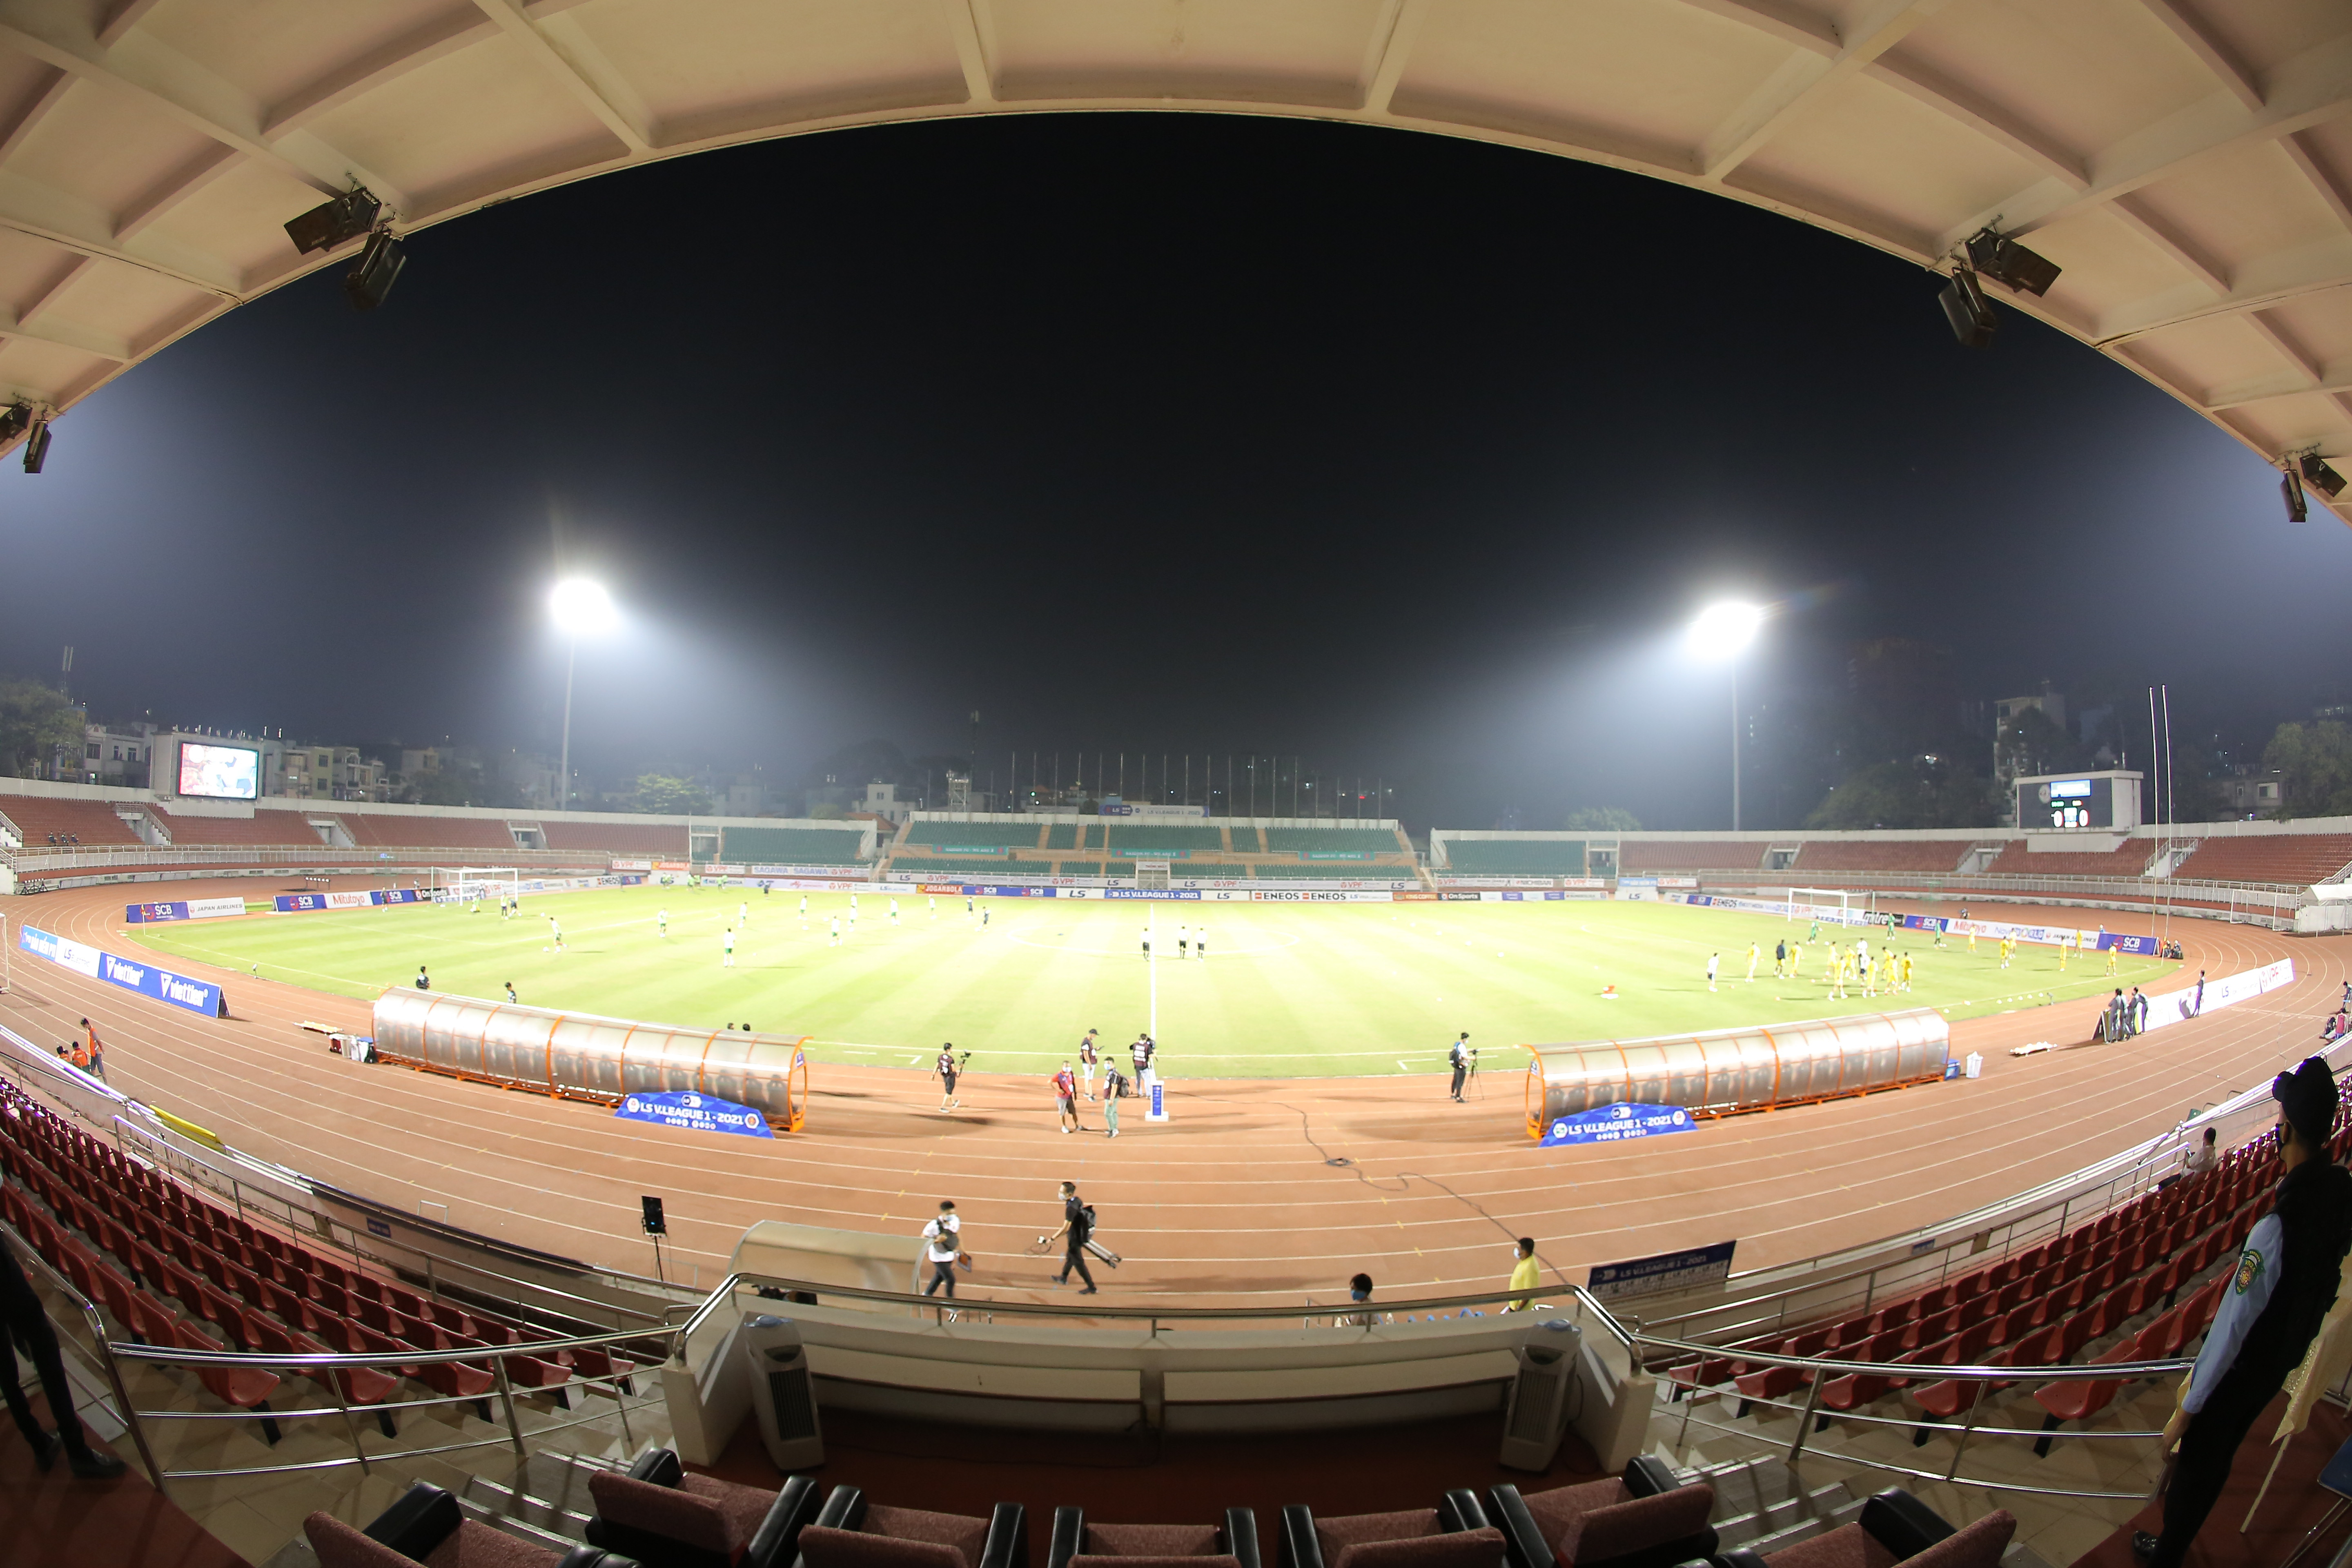 Liên đoàn bóng đá Việt Nam vừa ra thông báo về việc ban hành văn bản hướng dẫn công tác tổ chức thi đấu các giải Bóng đá quốc gia trong thời gian dịch bệnh. Ảnh: VPF